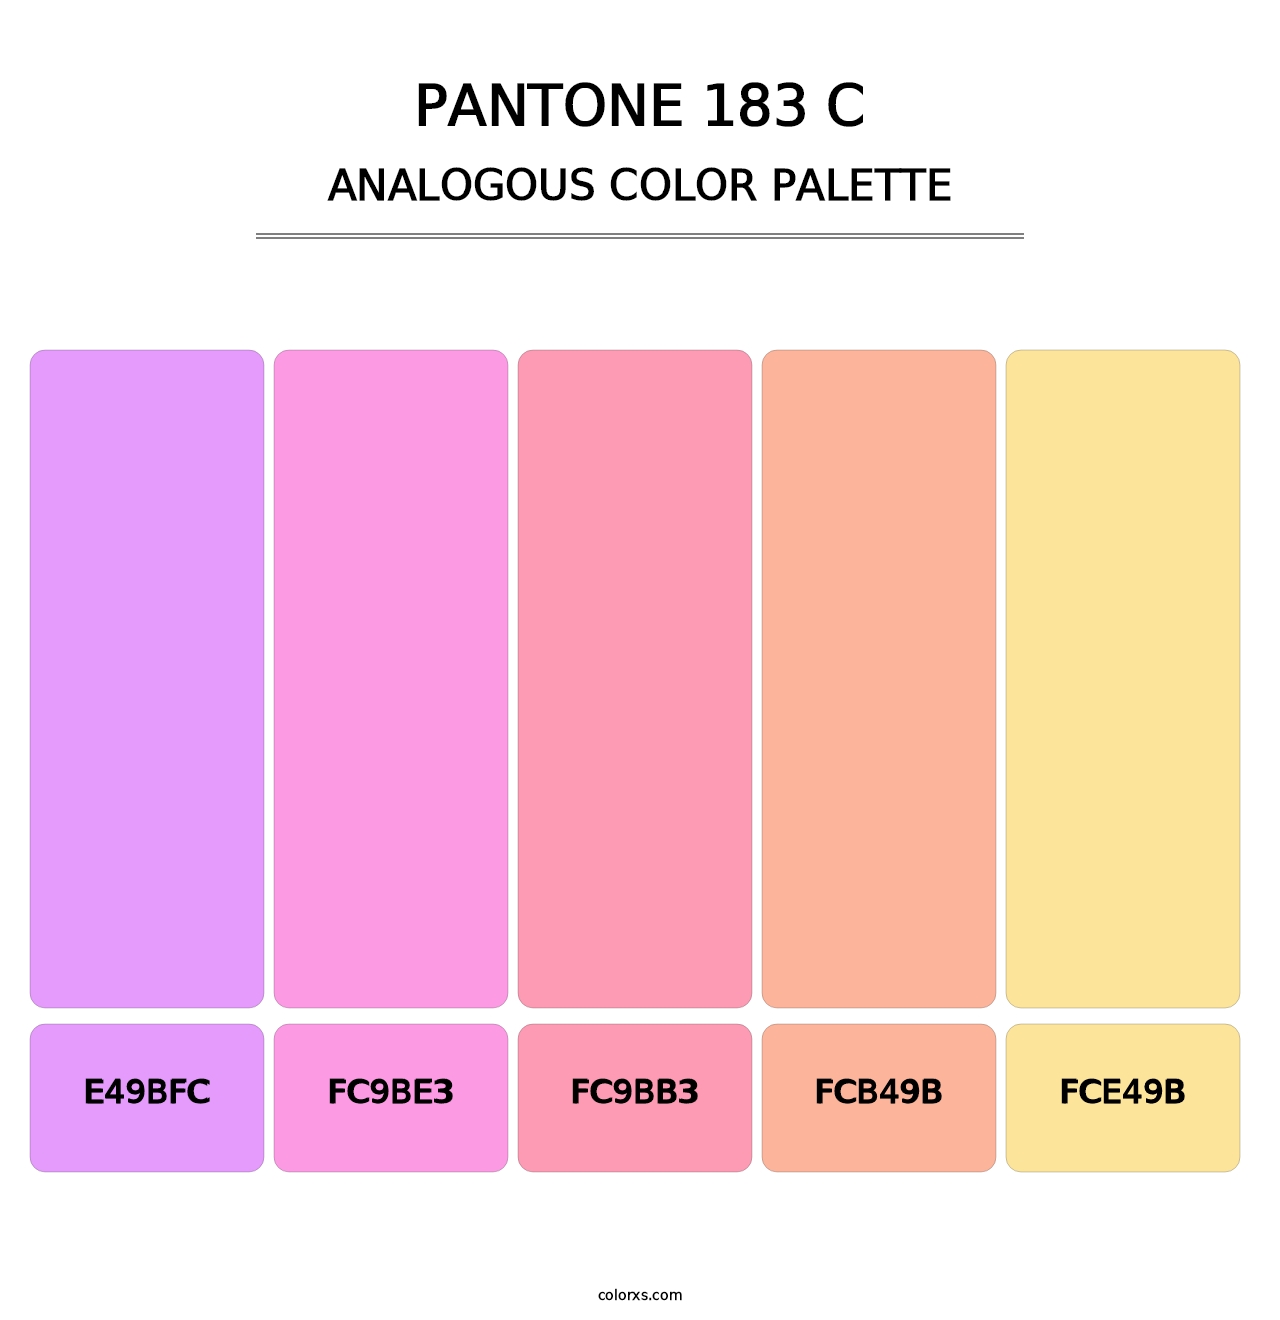 PANTONE 183 C - Analogous Color Palette